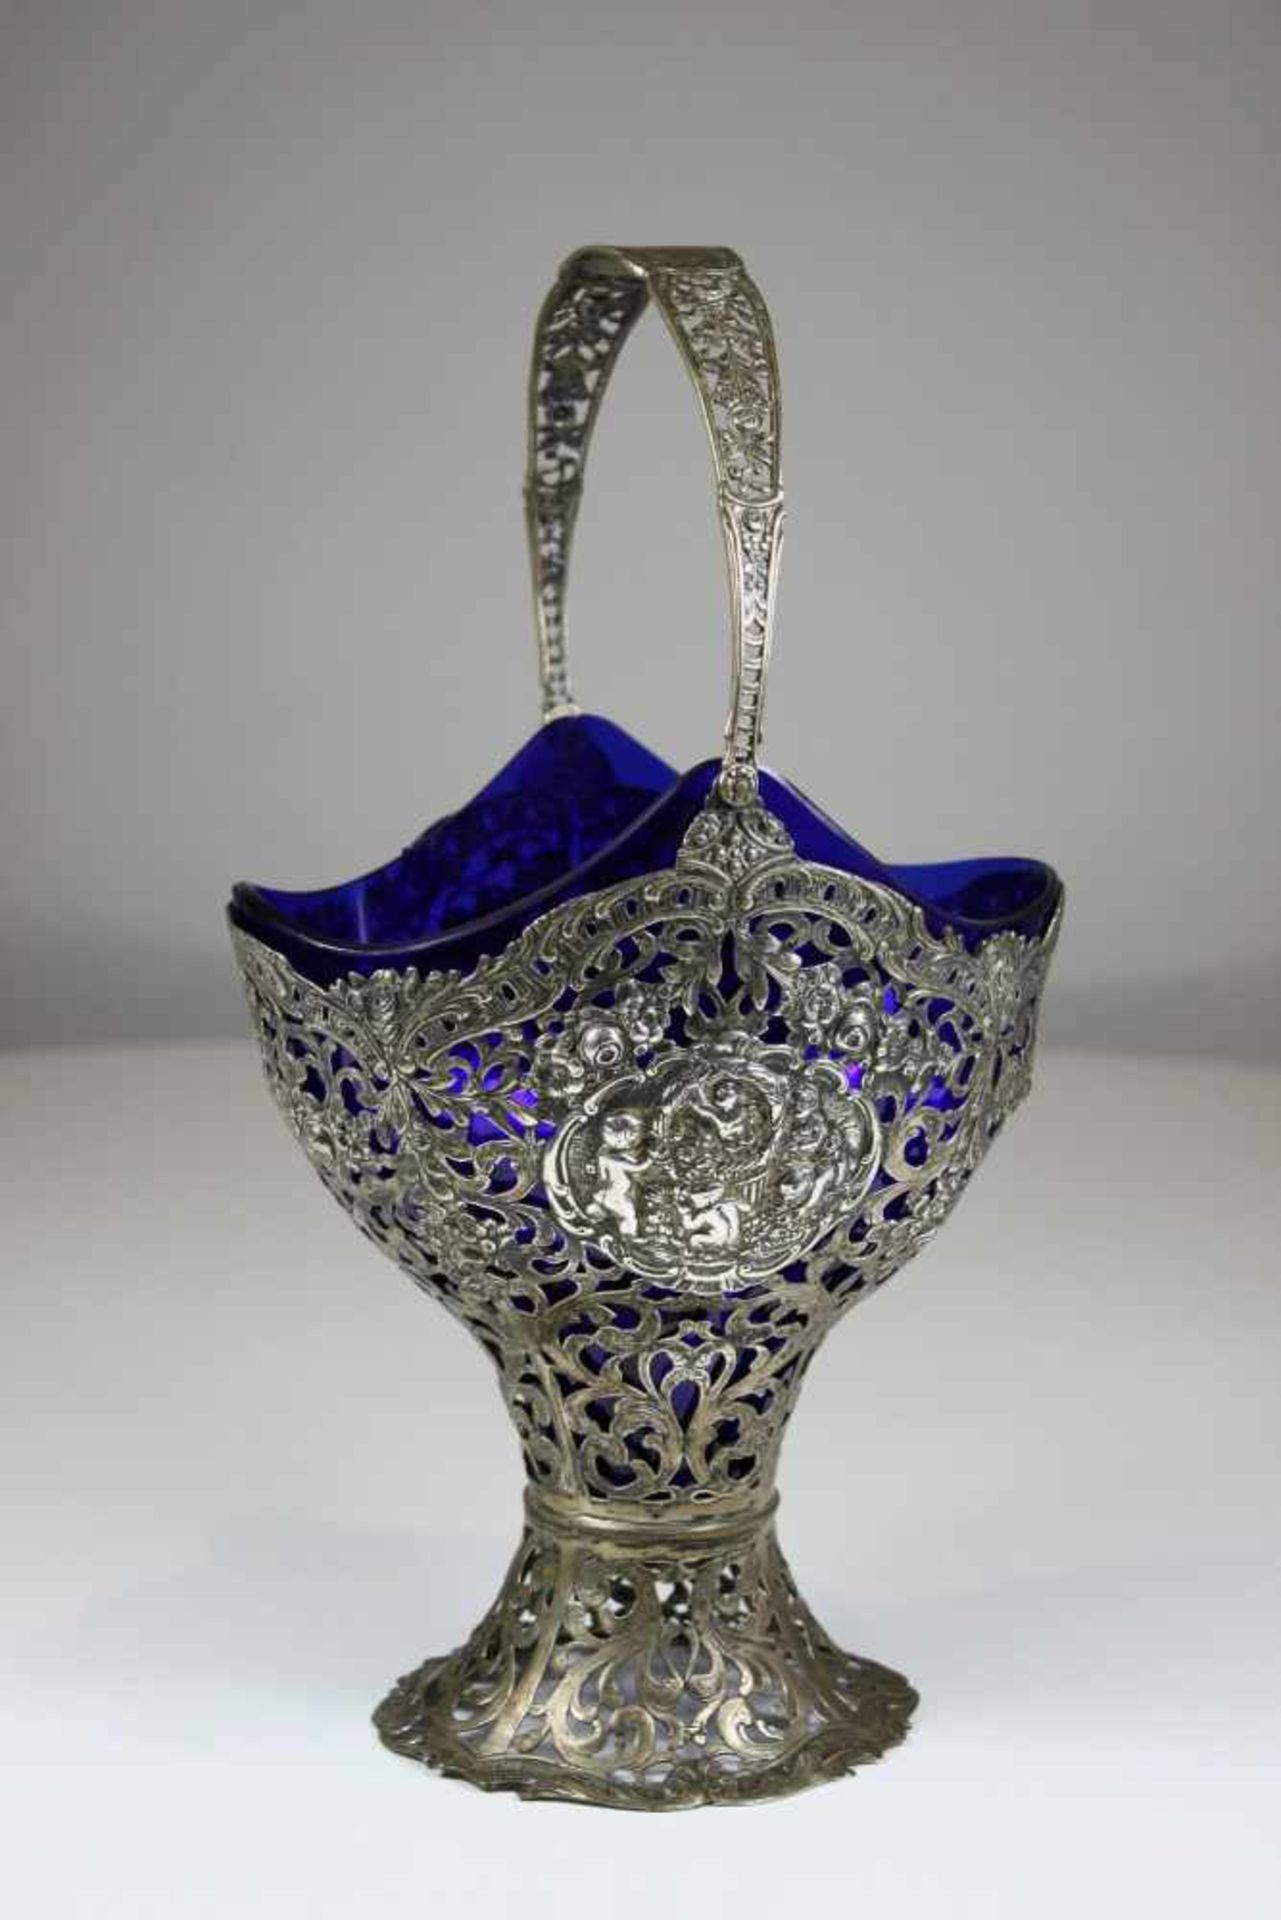 Silberkorb mit Kobaltblauer Glaseinsatzt, wohl 19. Jh., nicht punziert, ca. 523 gr, H. 23 cm,